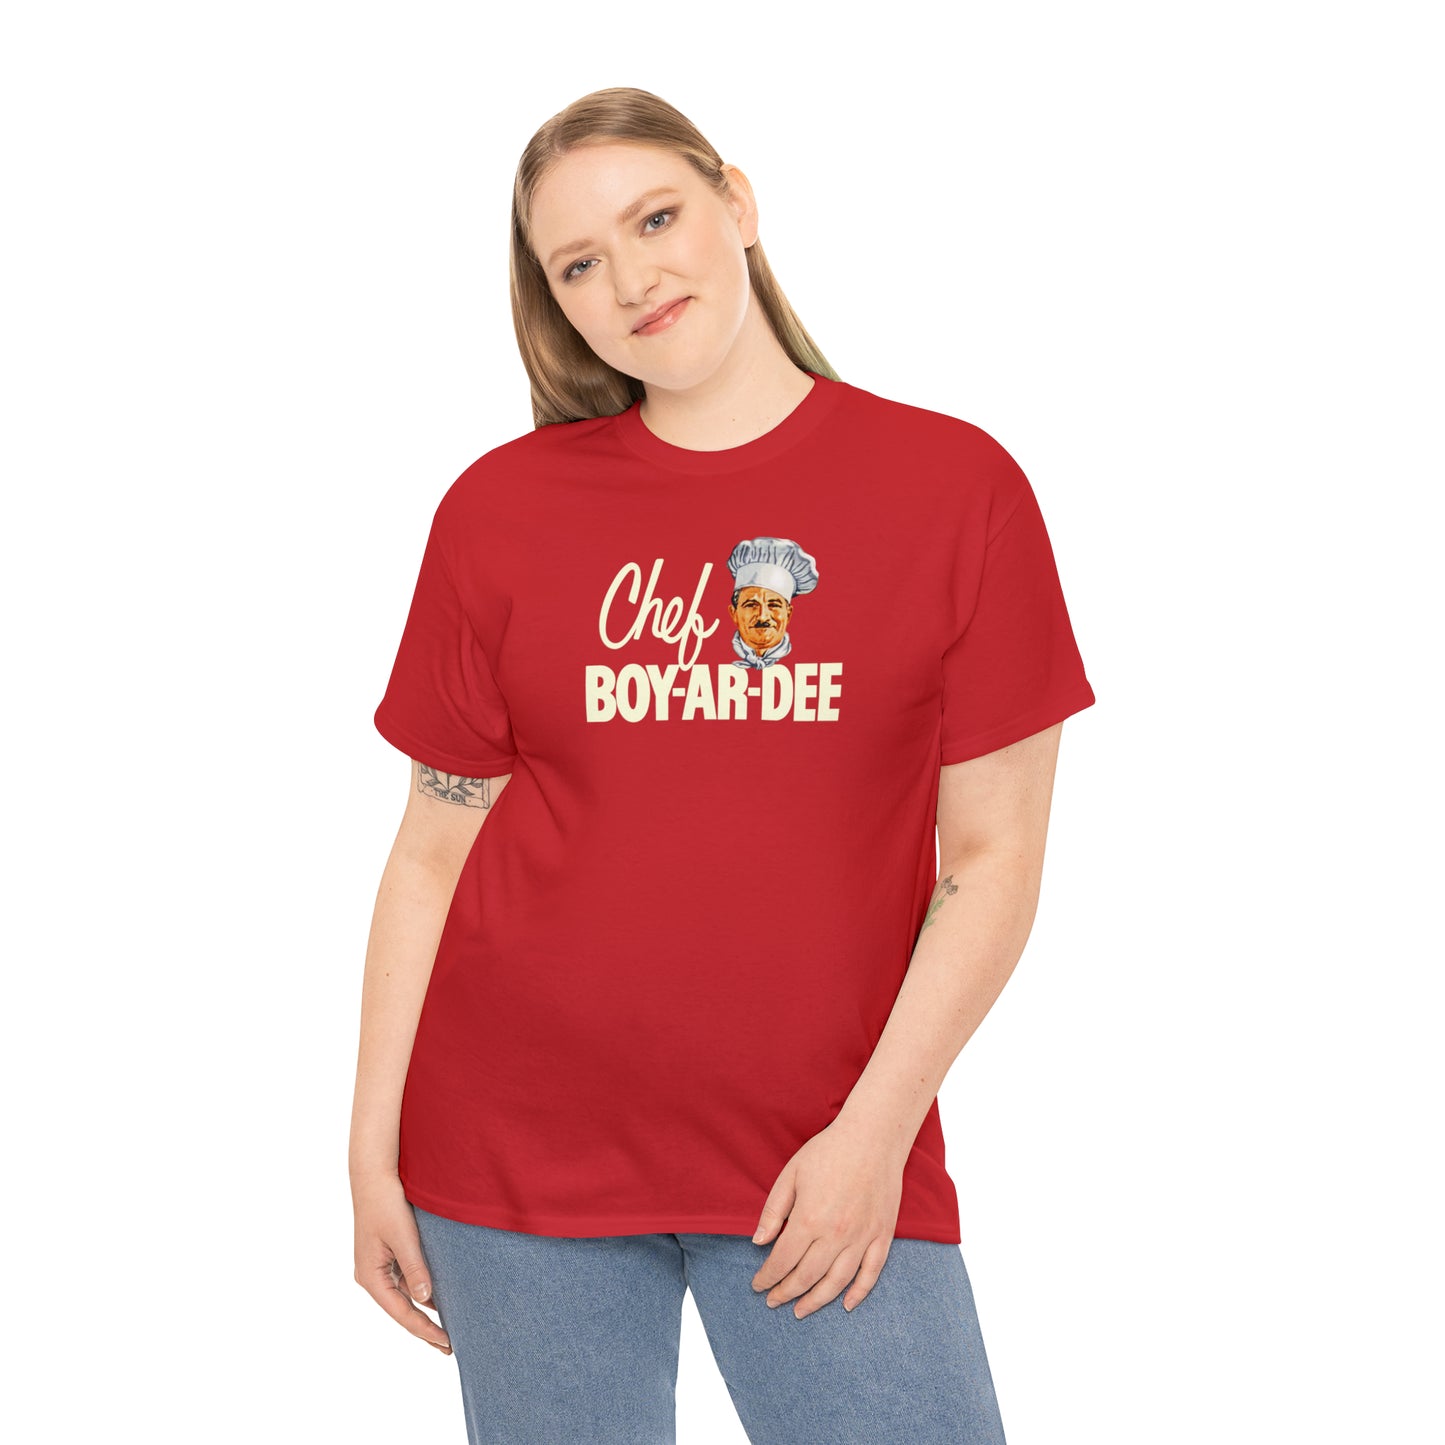 Chef Boy-ar-dee T-Shirt